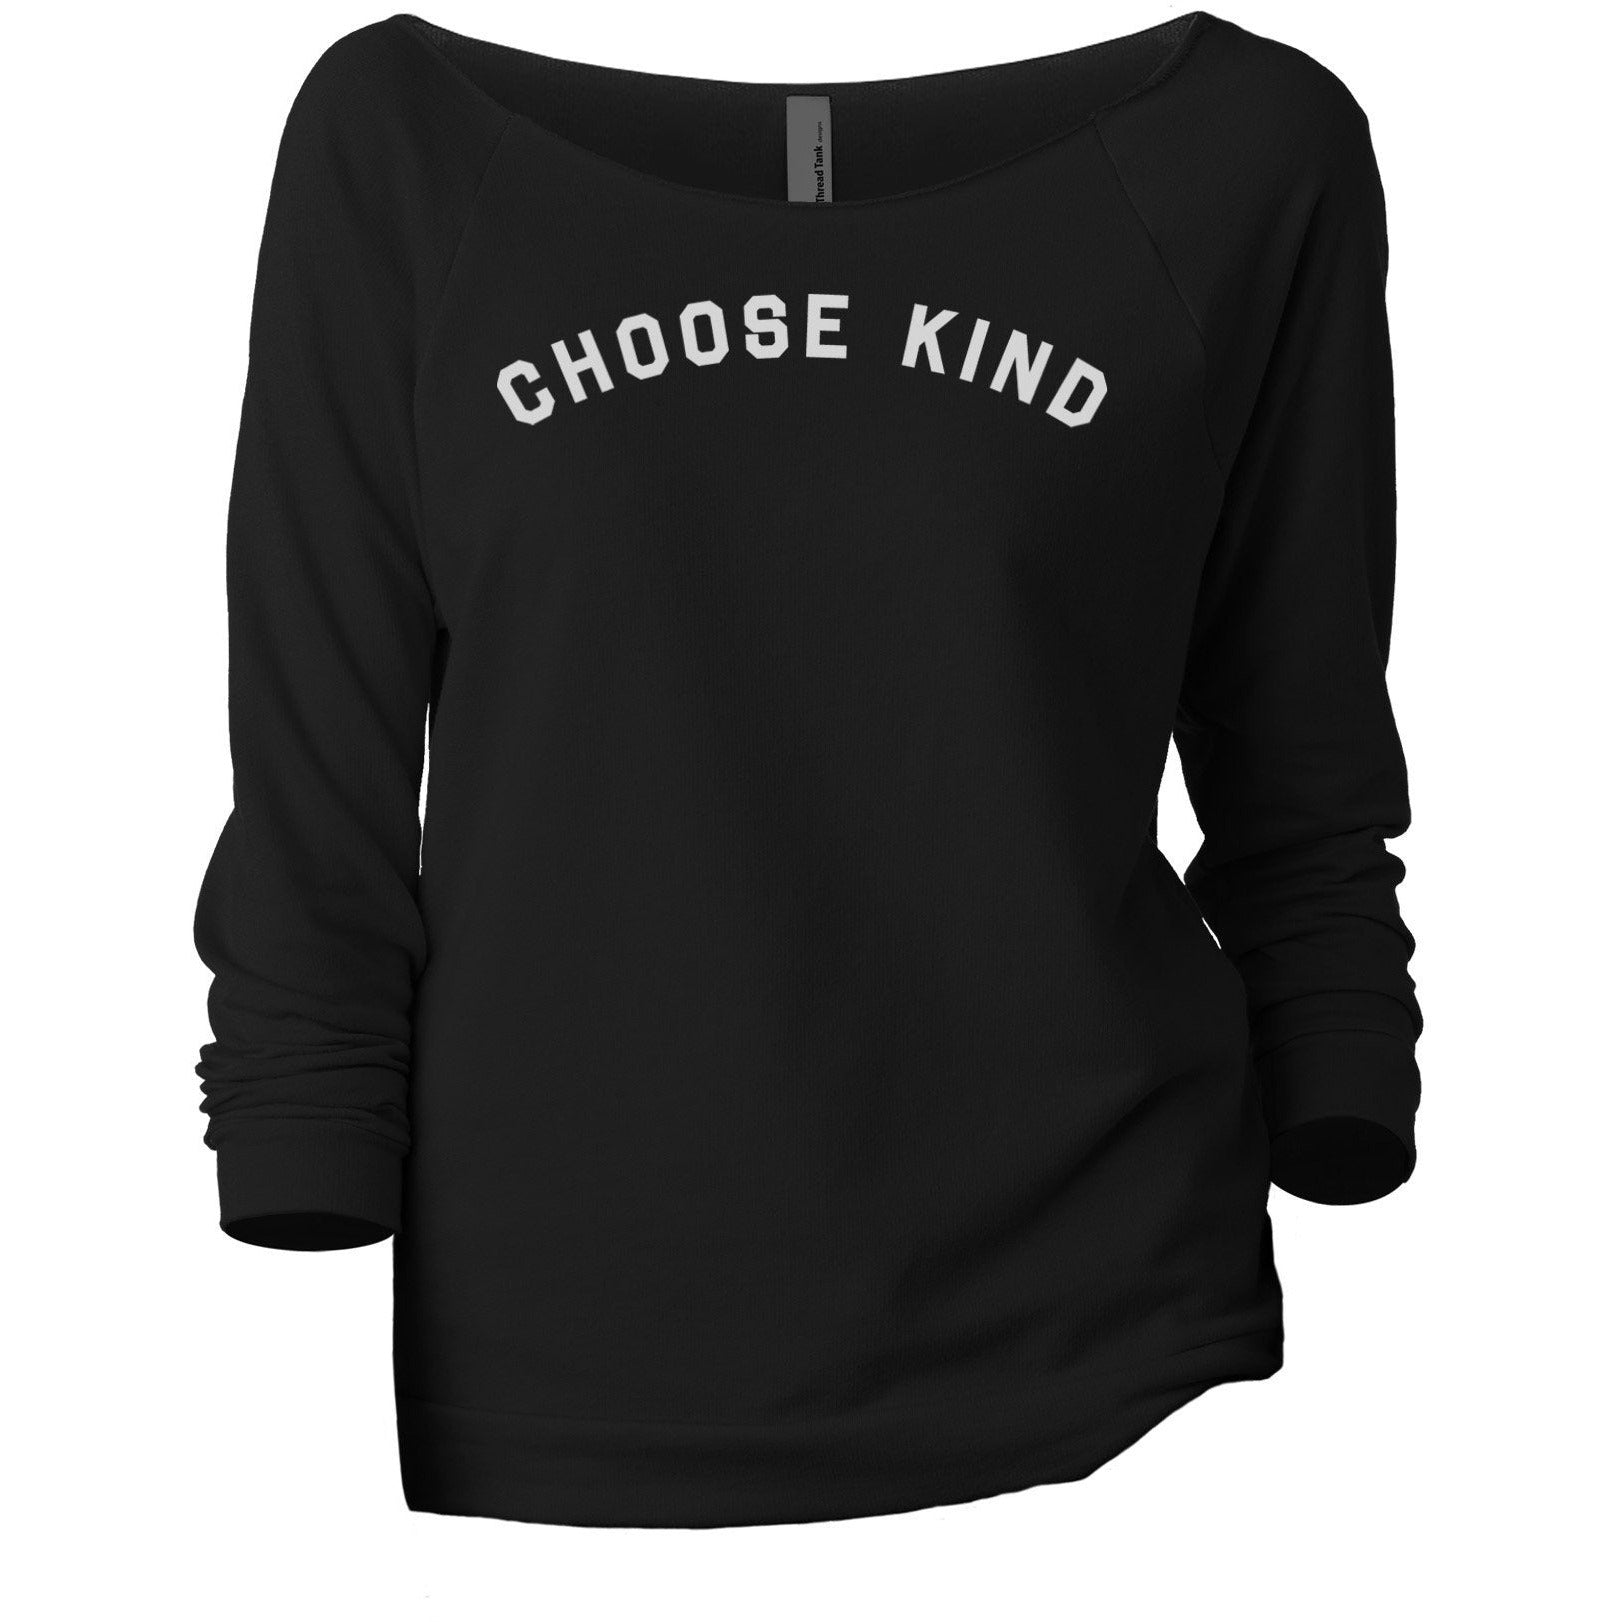 Choose Kind Women's Graphic Printed Lightweight Slouchy 3/4 Sleeves Sweatshirt Black